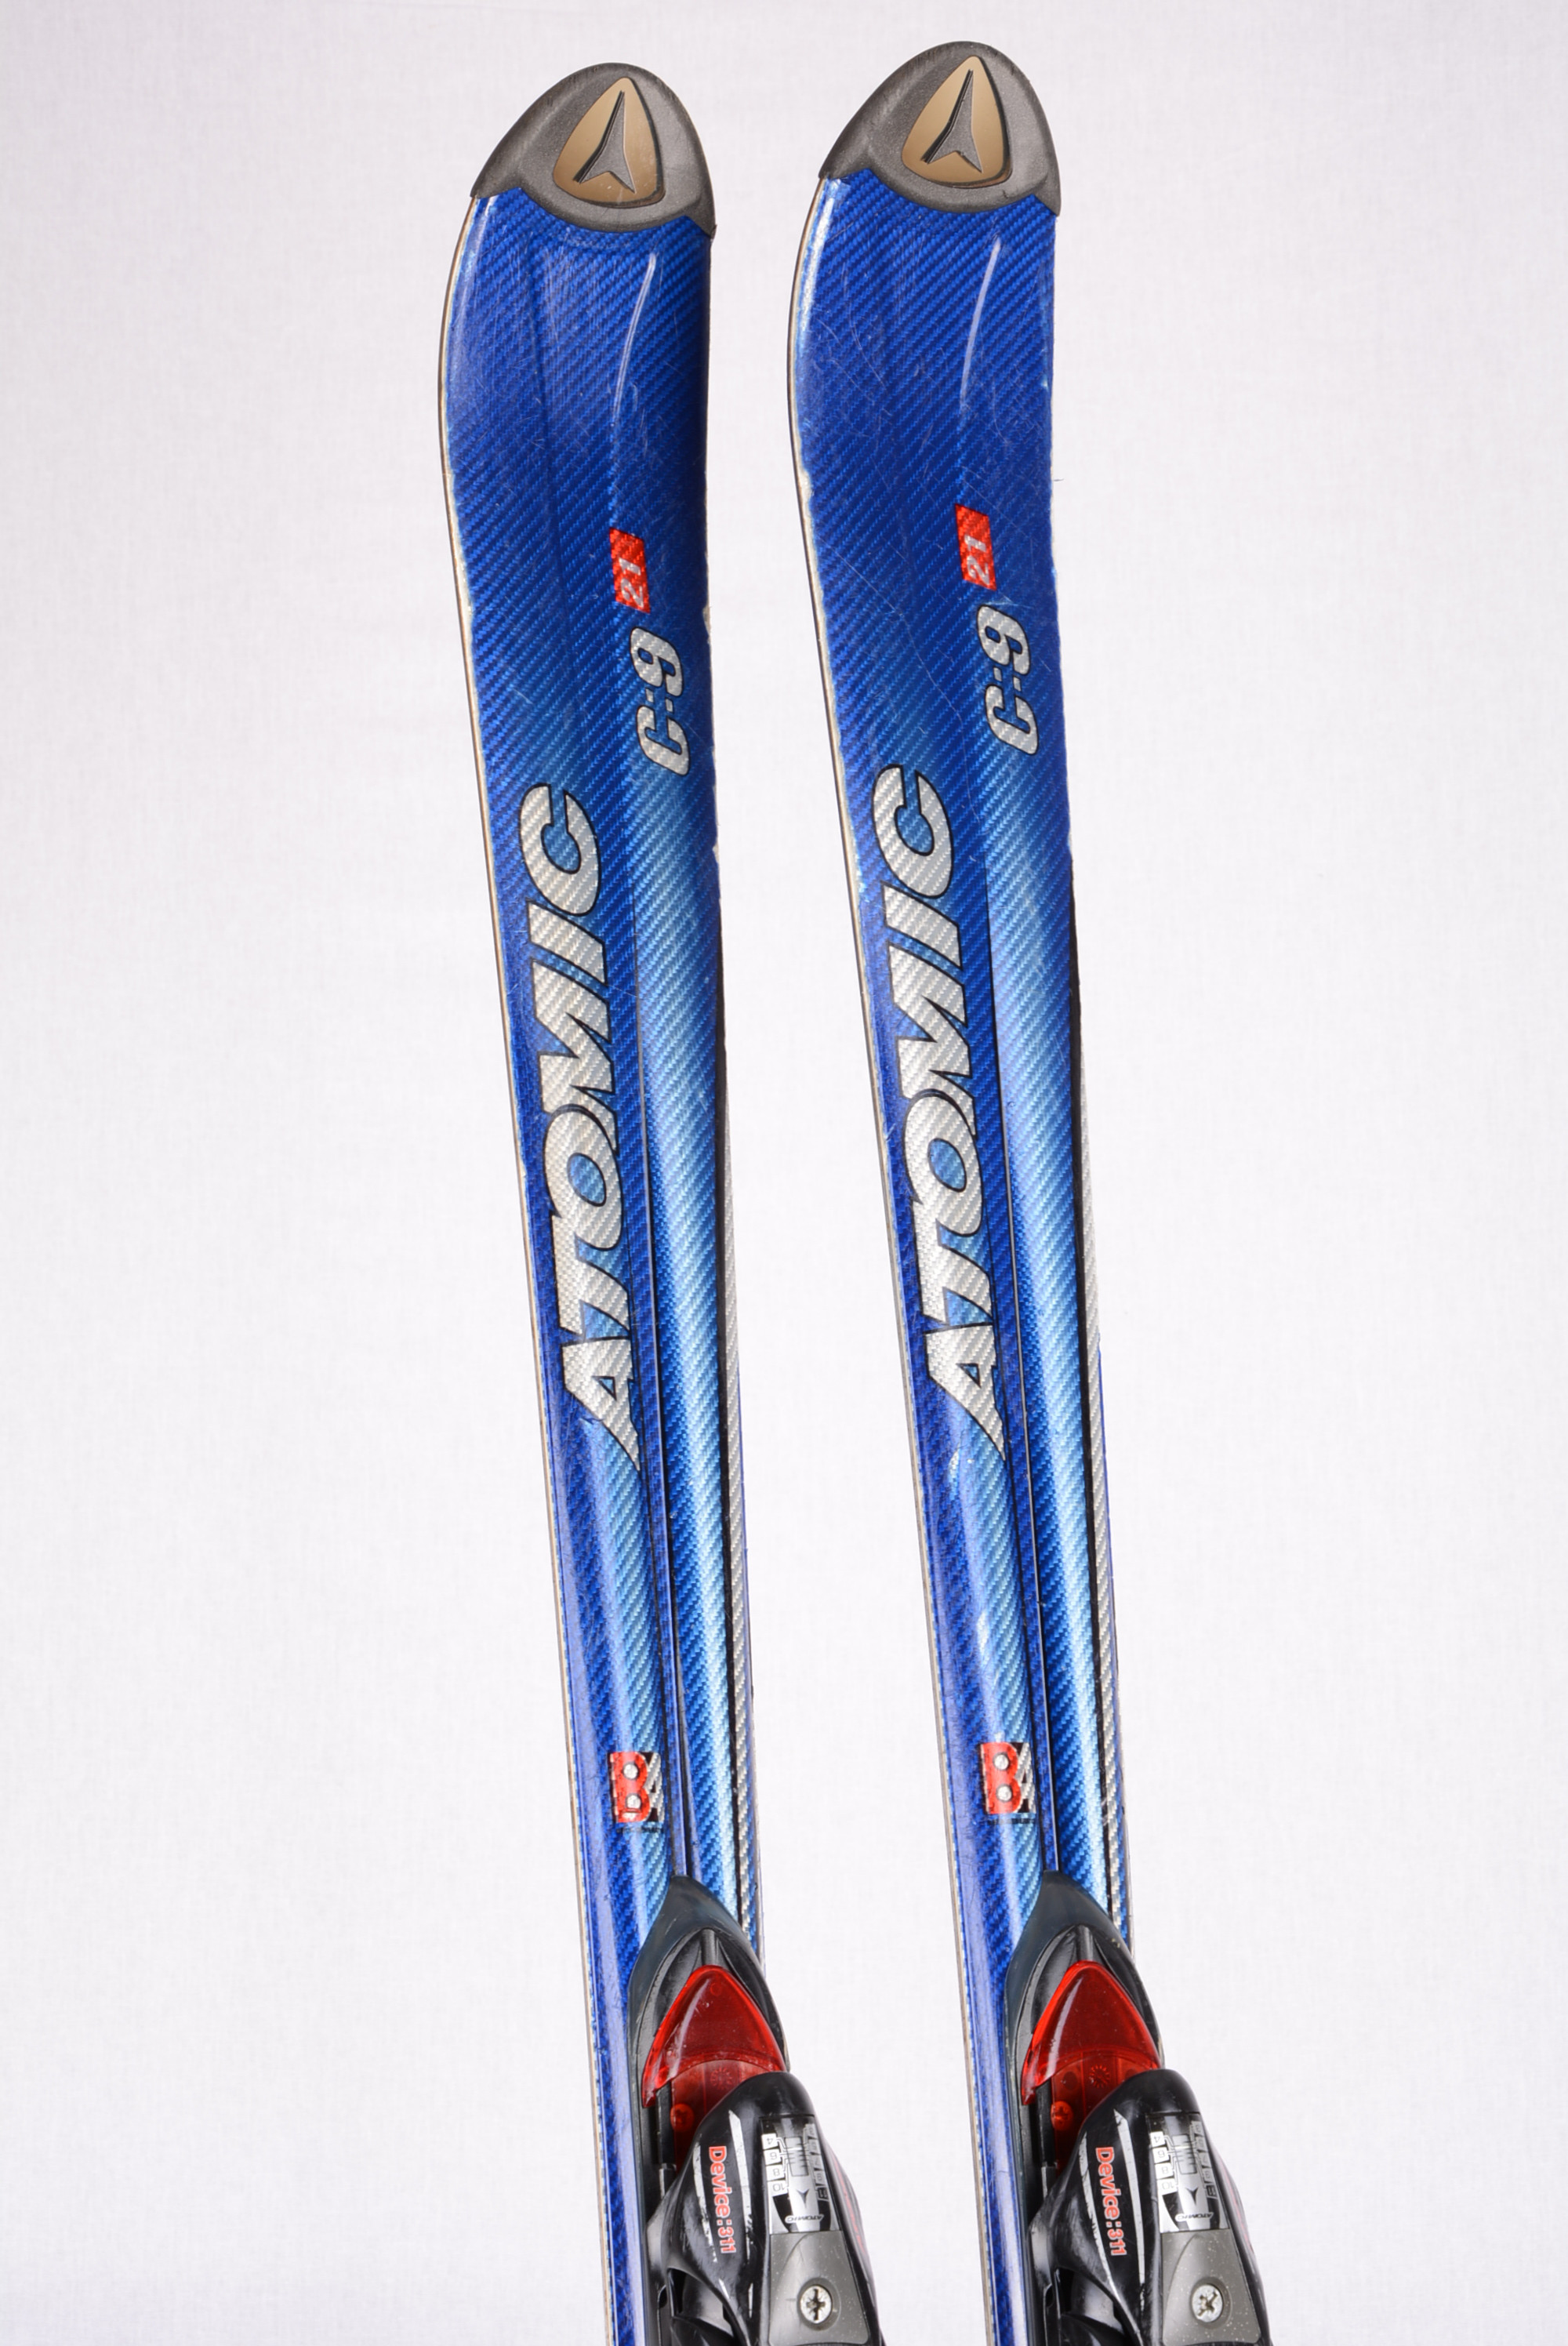 skis C:9 BETA HYPER CARBON + Device 311 - Mardosport.com